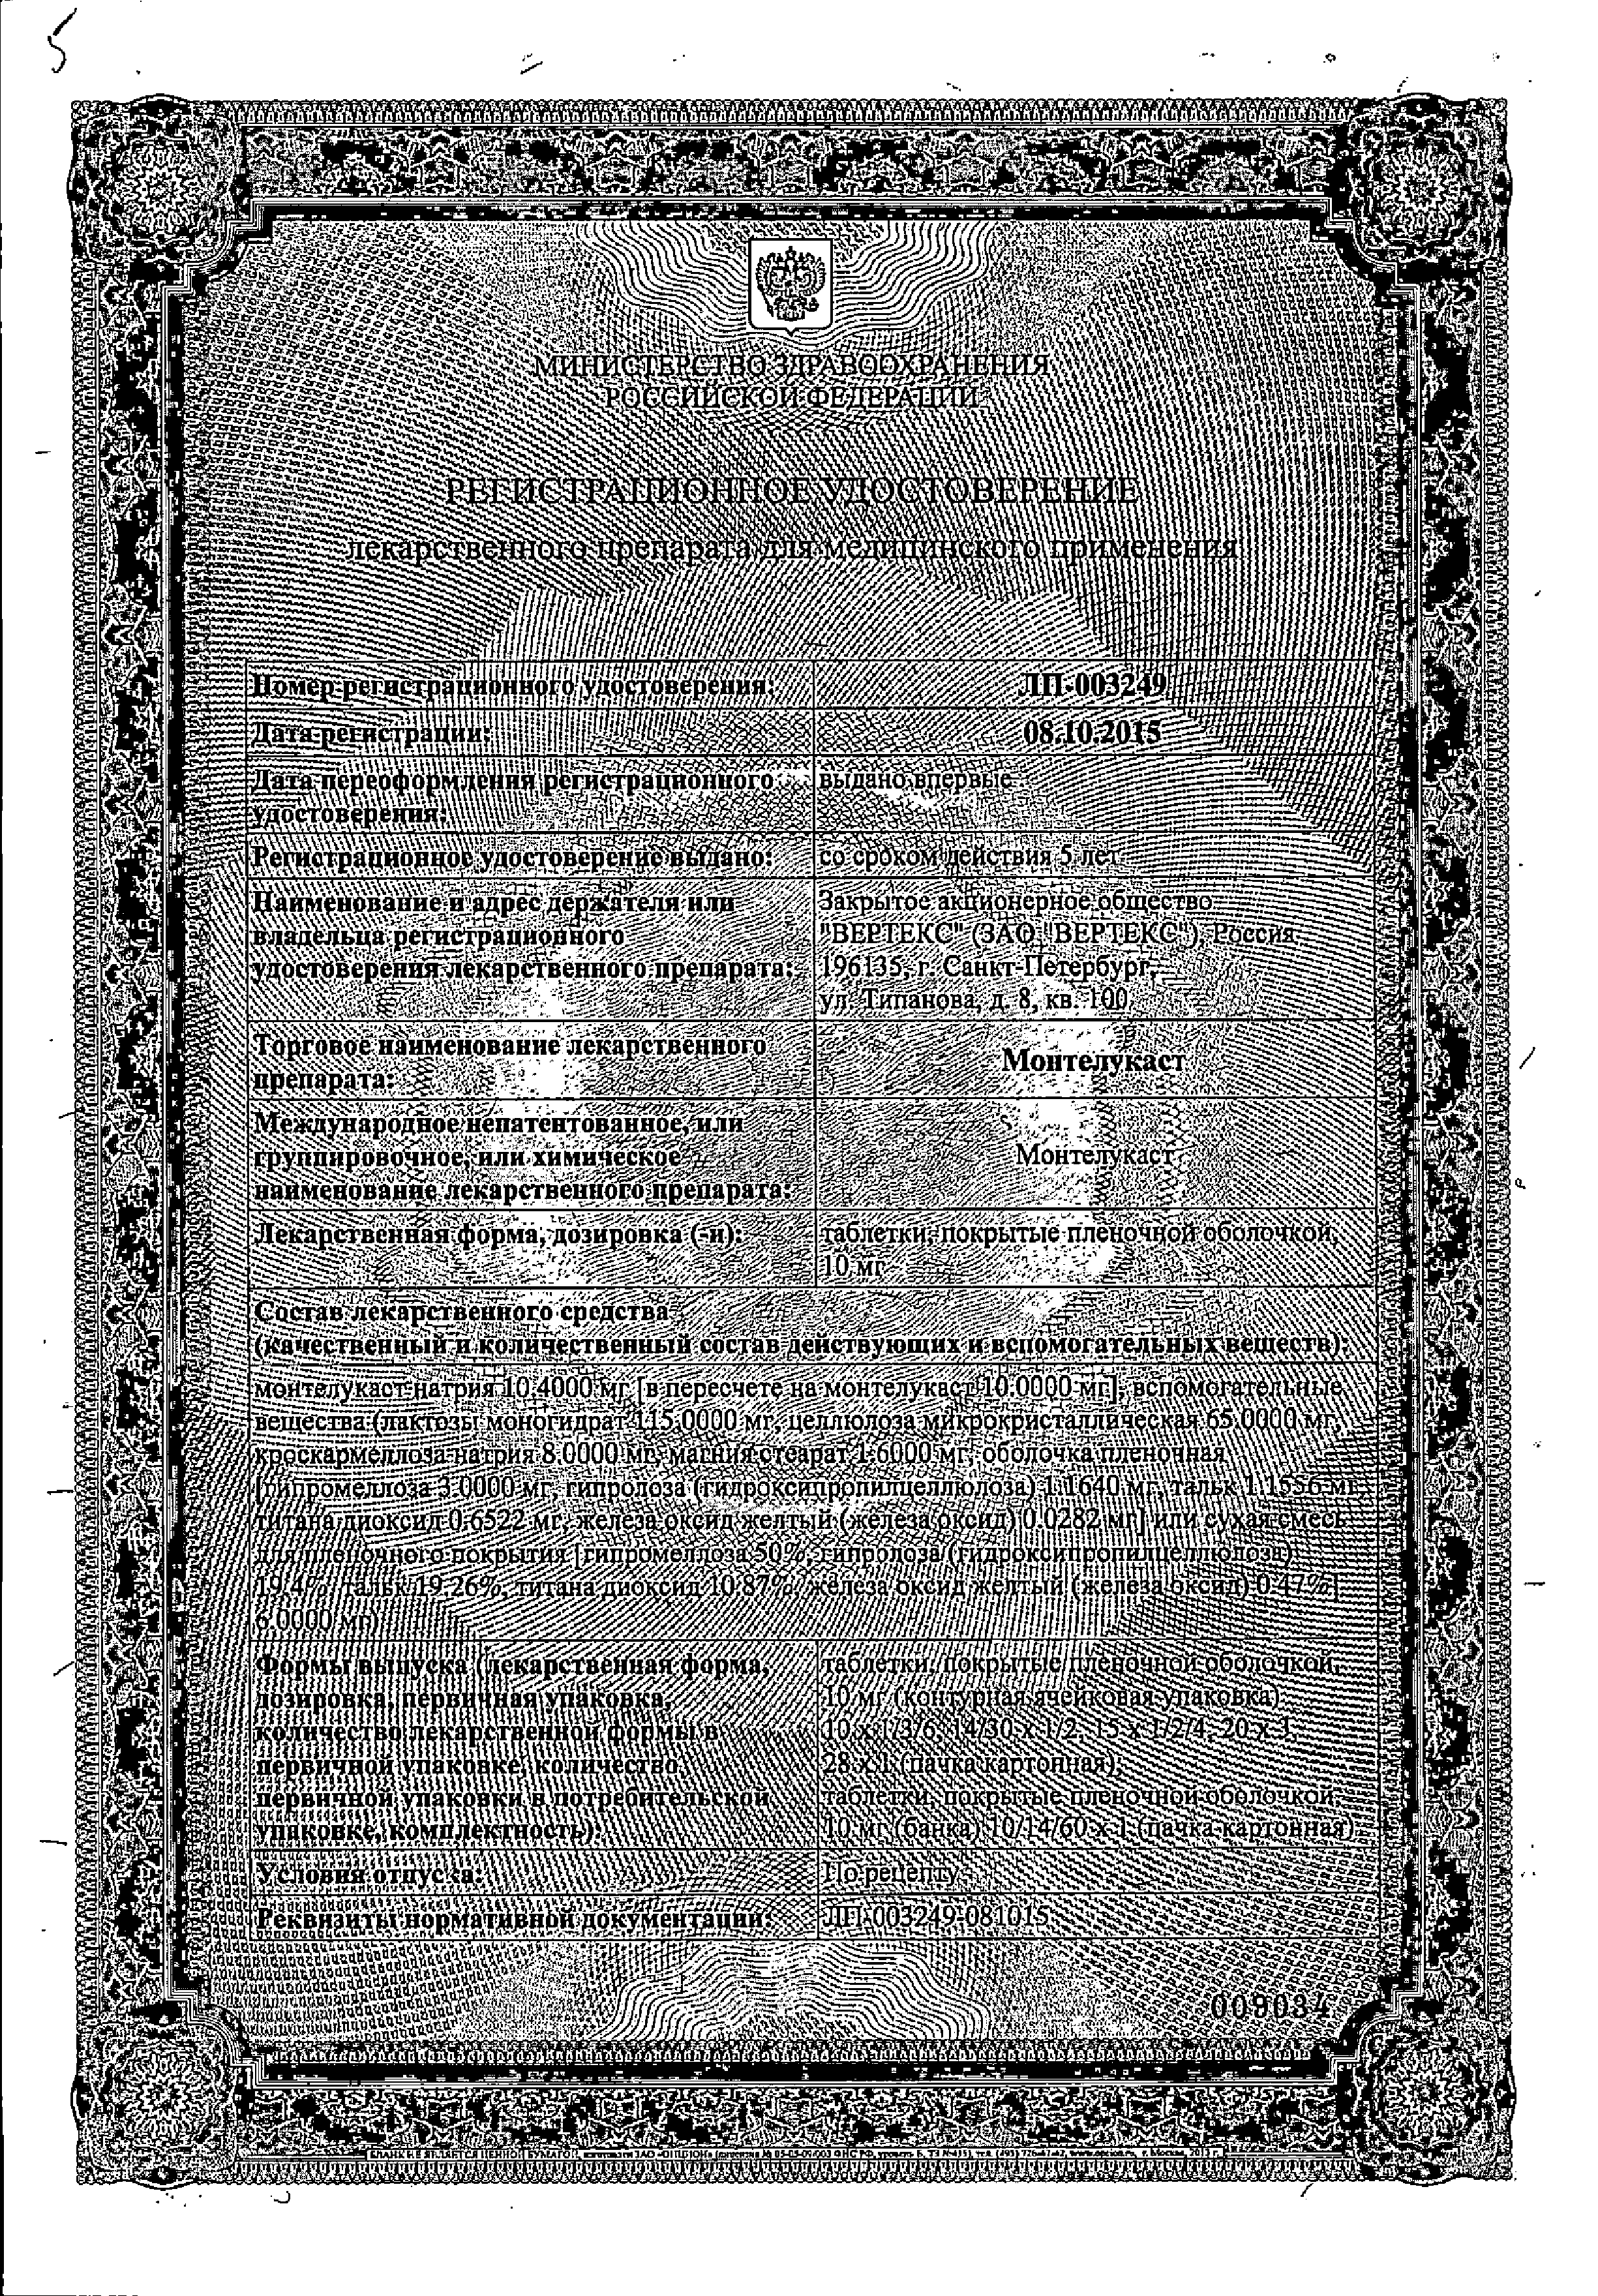 Монтелукаст сертификат